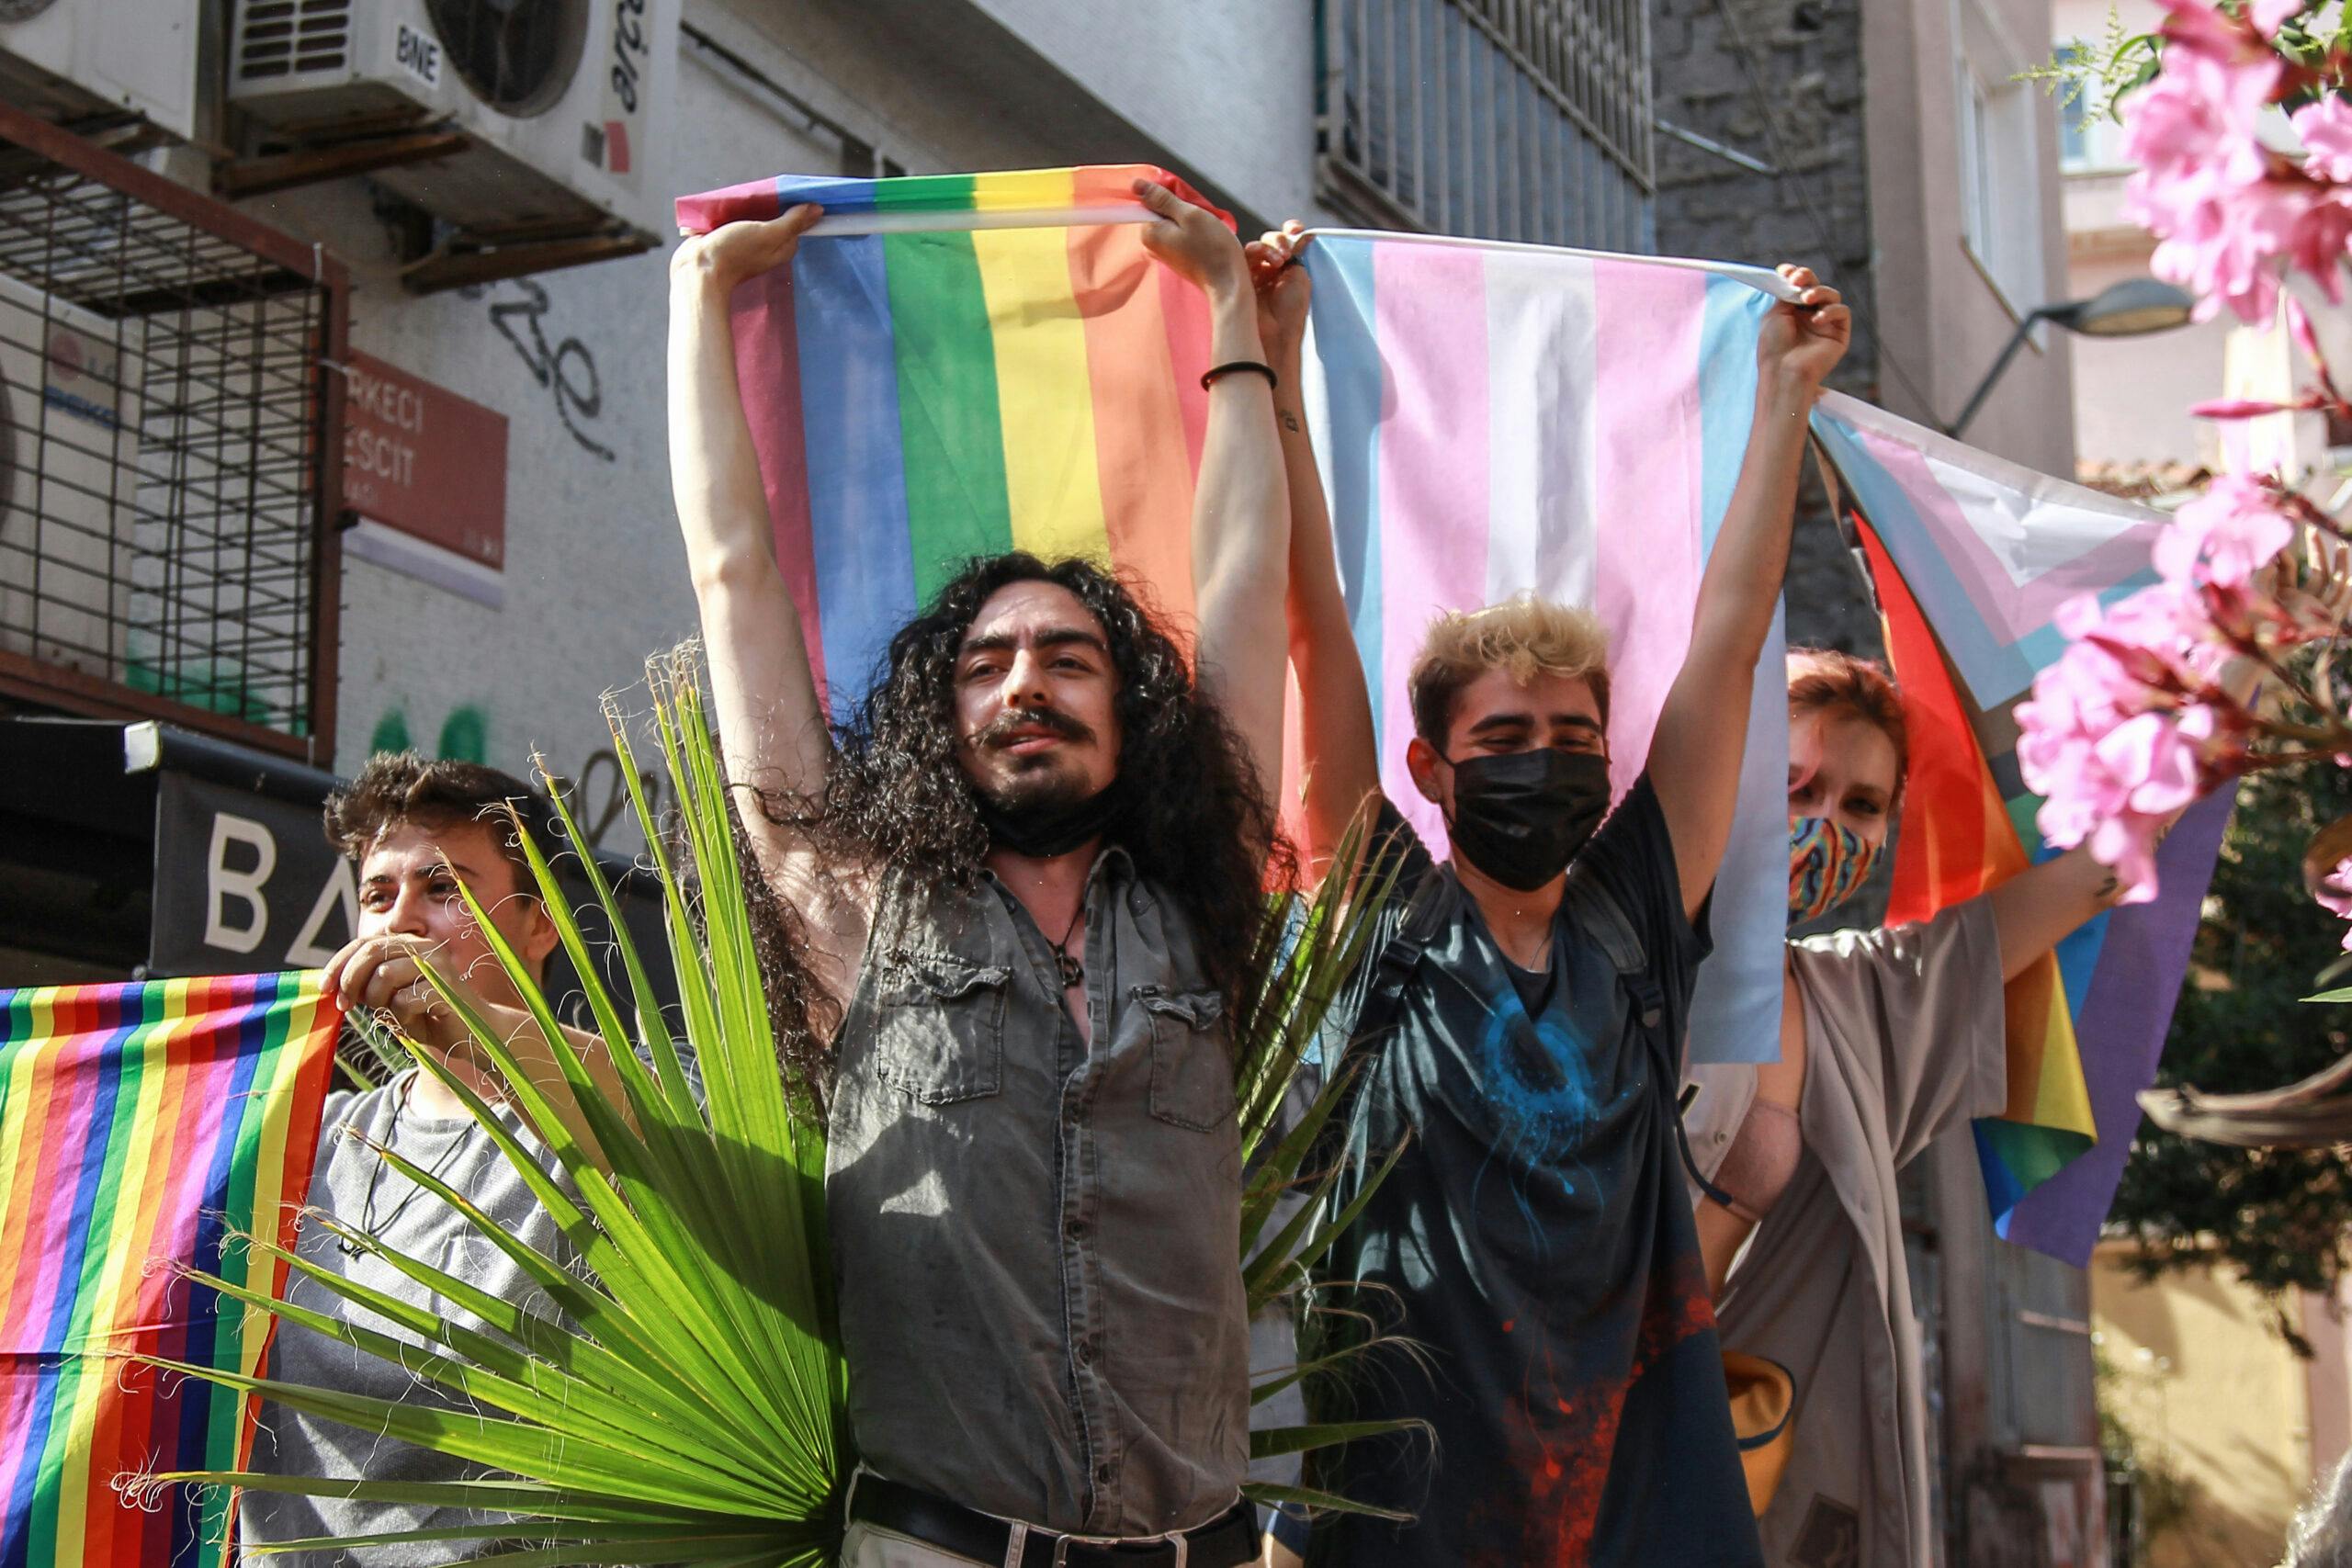 تصویری از افراد جامعه کوییر استانبول در راهیپمایی پراید سال ۲۰۱۳